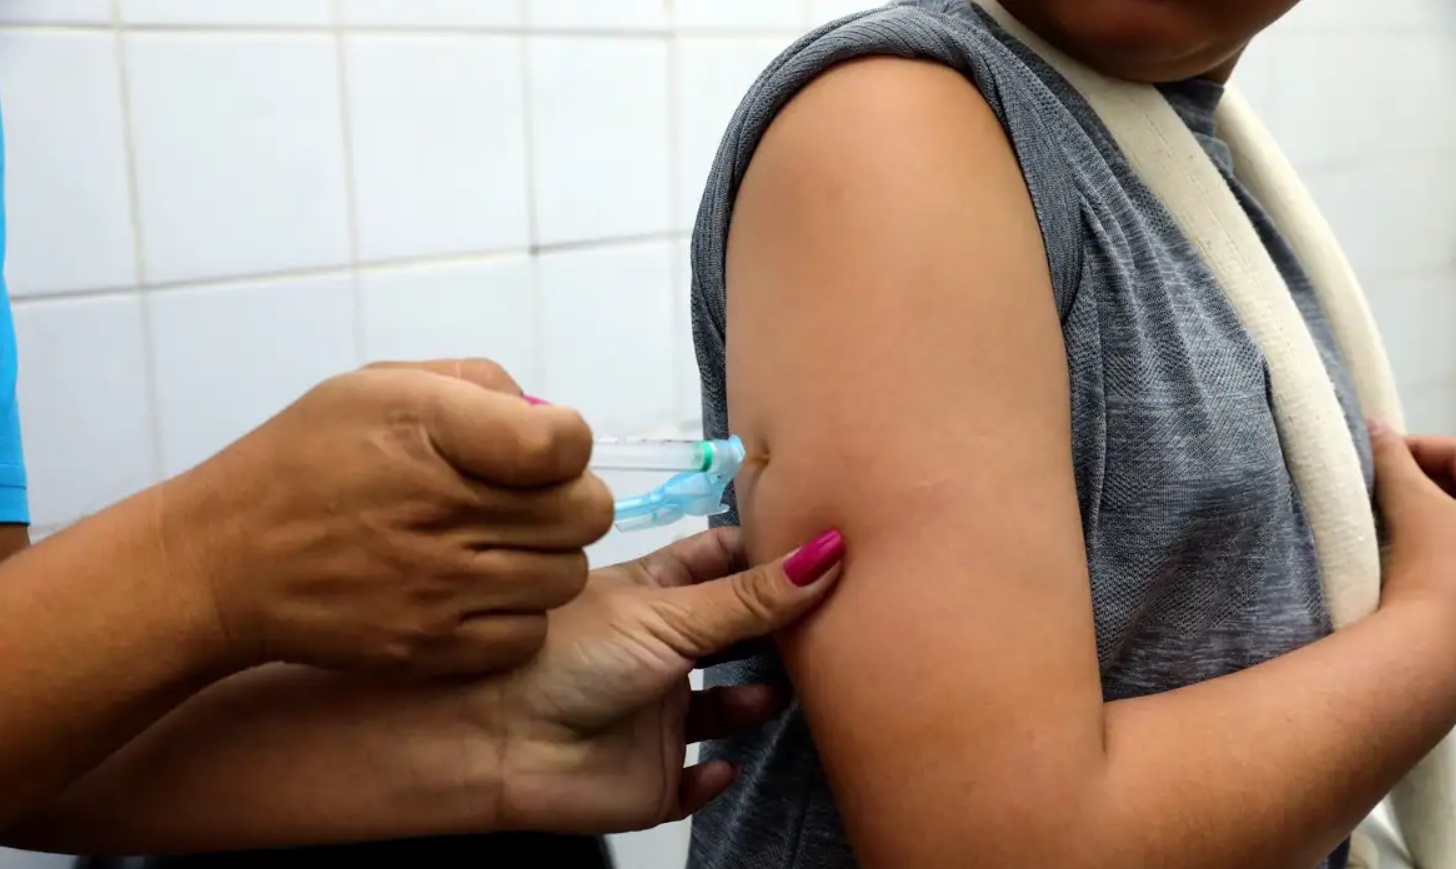 Ministério da Saúde amplia público-alvo da vacina contra dengue